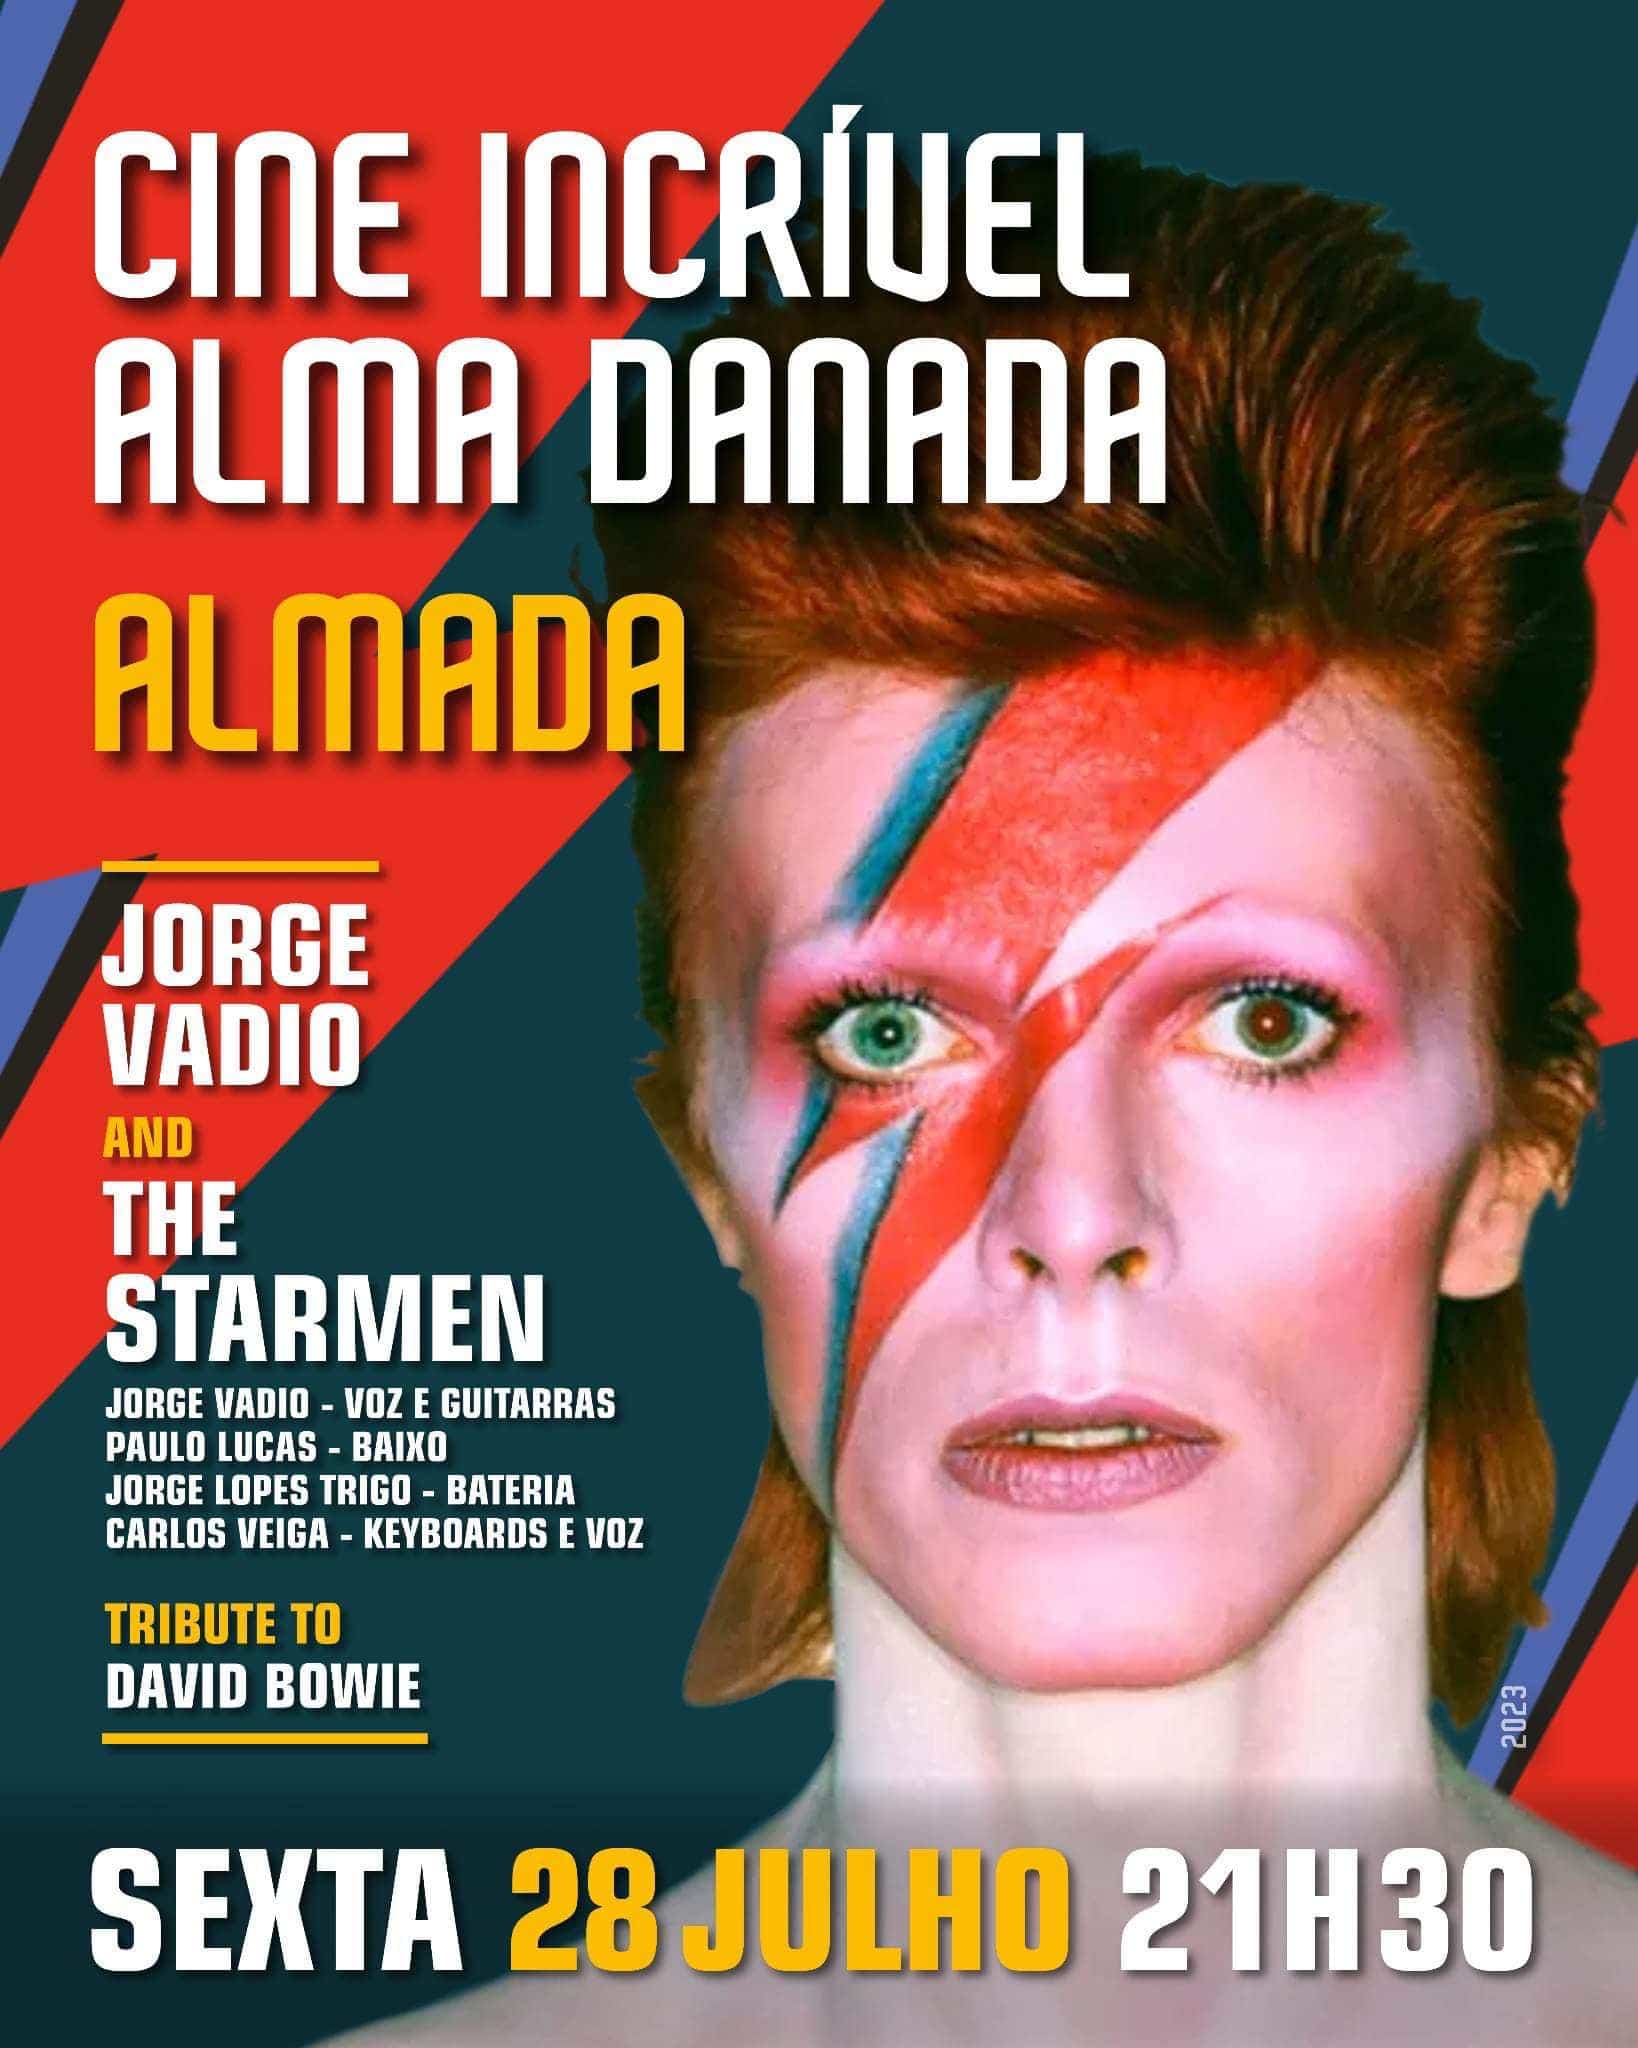 Jorge Vadio and The Starmen é uma banda de homenagem a David Bowie, liderada pelo musico Jorge Vadio. Neste espectáculo a banda revisita o legado musical do Camaleão Interpretando os seus maiores sucessos e os tesouros desconhecidos de O homem que vendeu o mundo. Este espetáculo multimédia, o levará a uma viagem por todas as fases da carreira de David Bowie. Desde "Space Oddity", passando por "Ziggy Stardust", até à sua obra-prima final "Blackstar", Jorge Vadio e os Starmen vão apresentar os grandes sucessos de David Bowie, este concerto poderoso e cheio de energia da banda é destacado por um desempenho vocal incrível de Jorge Vadio. Jorge Vadio e The Starmen há muito são considerados uma das melhores bandas de tributo a David Bowie na Europa, e tem recebido críticas elogiosas na América do Sul e do Norte. Jorge Vadio um músico português reconhecido com 6 álbuns / DVDs, várias aparições na televisão e grandes actuações ao vivo. Na sua primeira digressão pelos Estados Unidos Jorge e Mike Garson pianista de Bowie, lançaram a versão portuguesa de Life on Mars, "VIDA EM MARTE", Autorizado por David Bowie . Desde de então Jorge Vadio tem trabalhado com varios musicos de Bowie como Gerry Leonard , Ava Cherry , Mike Garson, Kevin Armstrong entre outros. Seguem três de um concerto de Jorge Vadio e Gerry Leonard em 14 de Outubro de 2019 na mítica sala The Cutting Room em Nova York. https://youtu.be/JWrHLU0ayCM Jorge Vadio e Gerry Leonard "Loving the Alien" https://youtu.be/XQCSWltYjas Jorge Vadio e Gerry Leonard "My Death" https://youtu.be/NP9UN2gyIi0 Jorge Vadio e Mike Garson "Vida em Marte" Life on mars . A versão portuguesa autorizada pelo próprio David Bowie. https://youtu.be/irNFazyyNXw Jorge Vadio e Gerry Andy